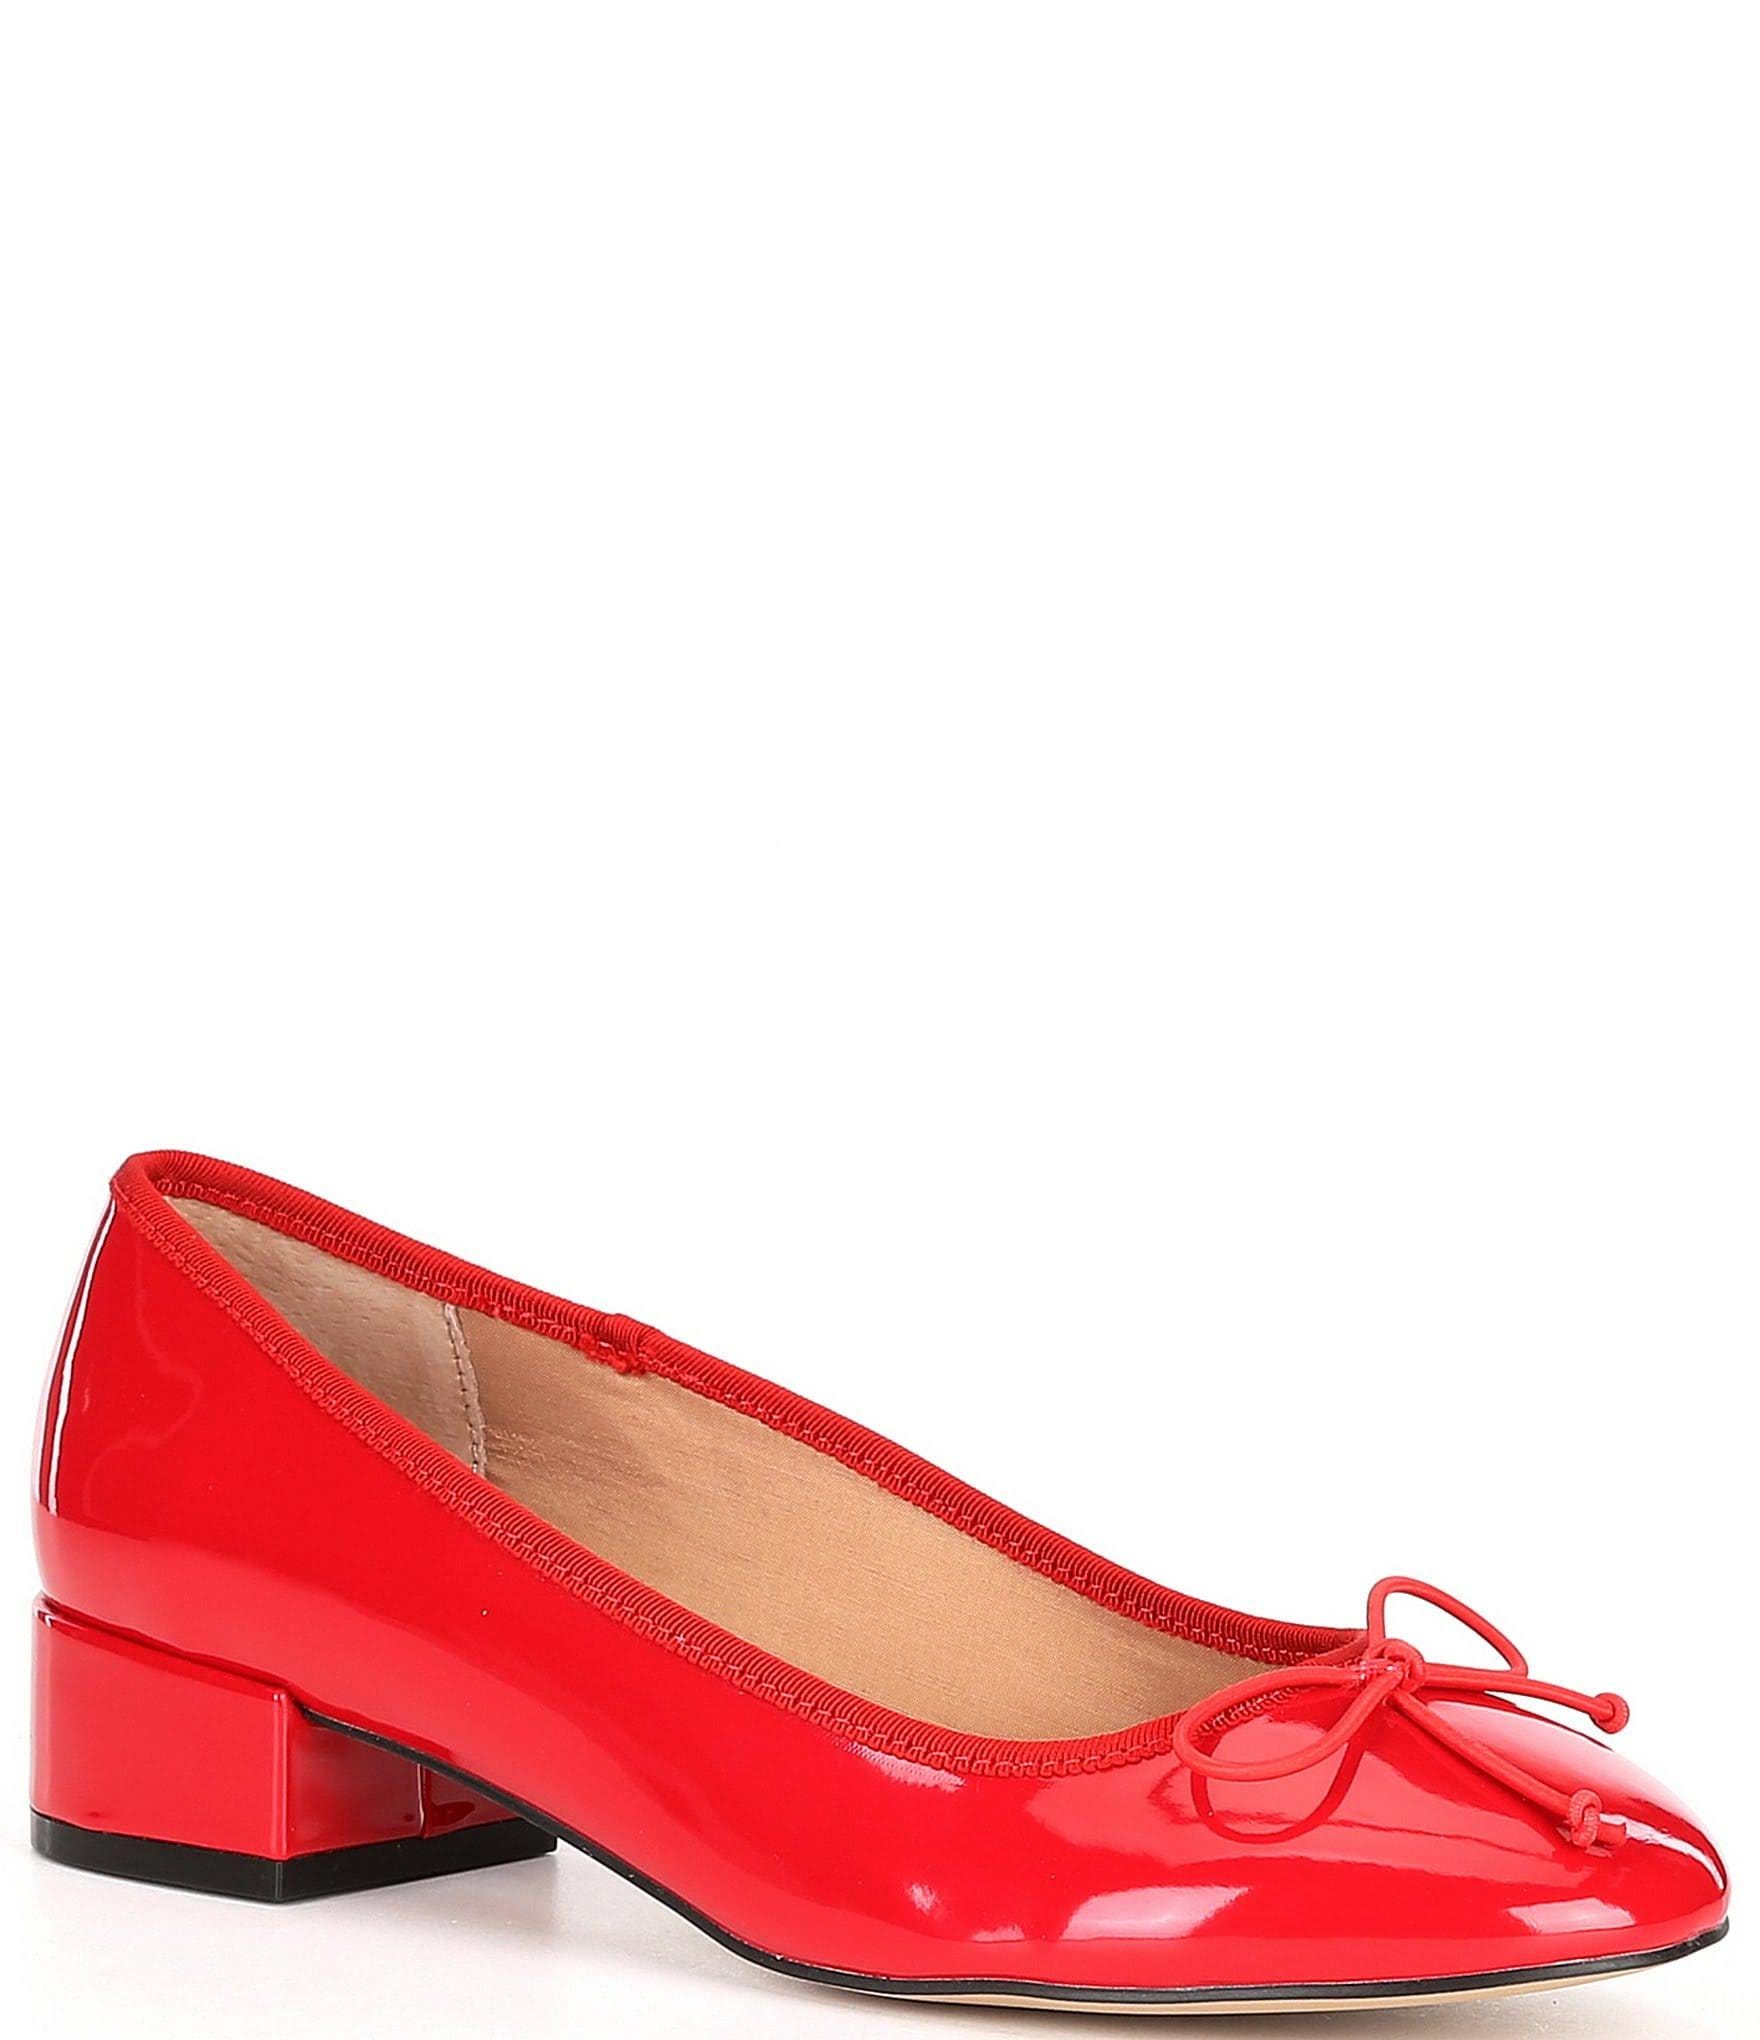 Steve Madden Women's Cherish Red Patent Heels | Image